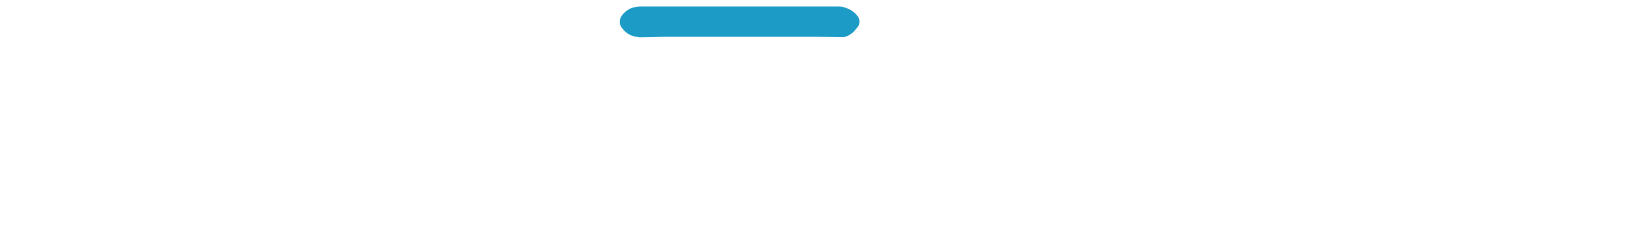 Hyzon Motors logo large for dark backgrounds (transparent PNG)